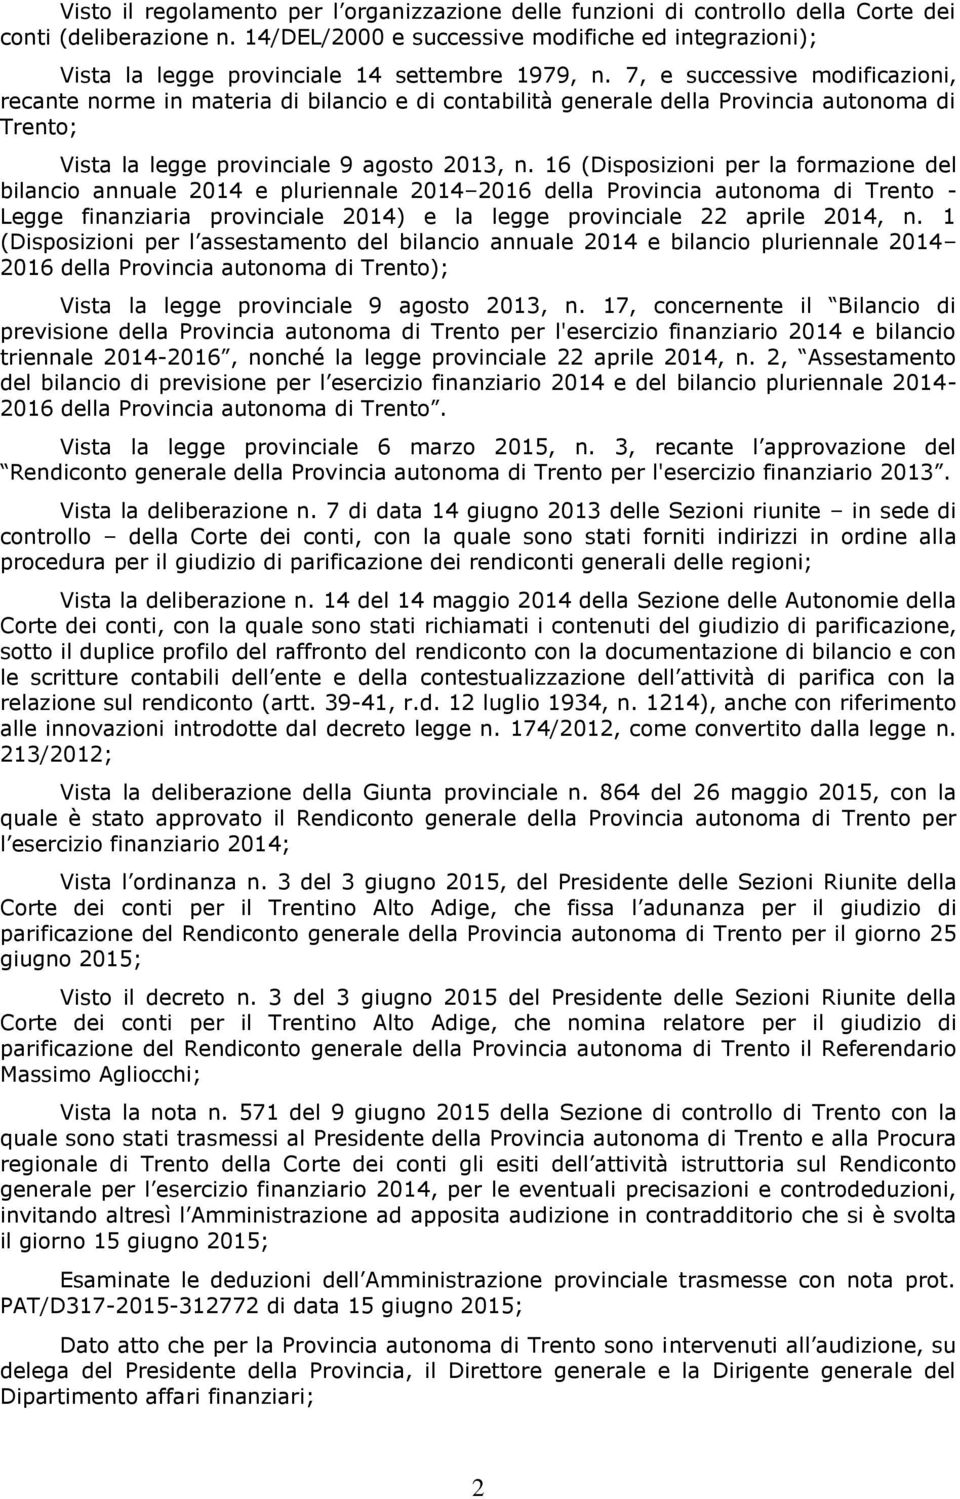 7, e successive modificazioni, recante norme in materia di bilancio e di contabilità generale della Provincia autonoma di Trento; Vista la legge provinciale 9 agosto 2013, n.